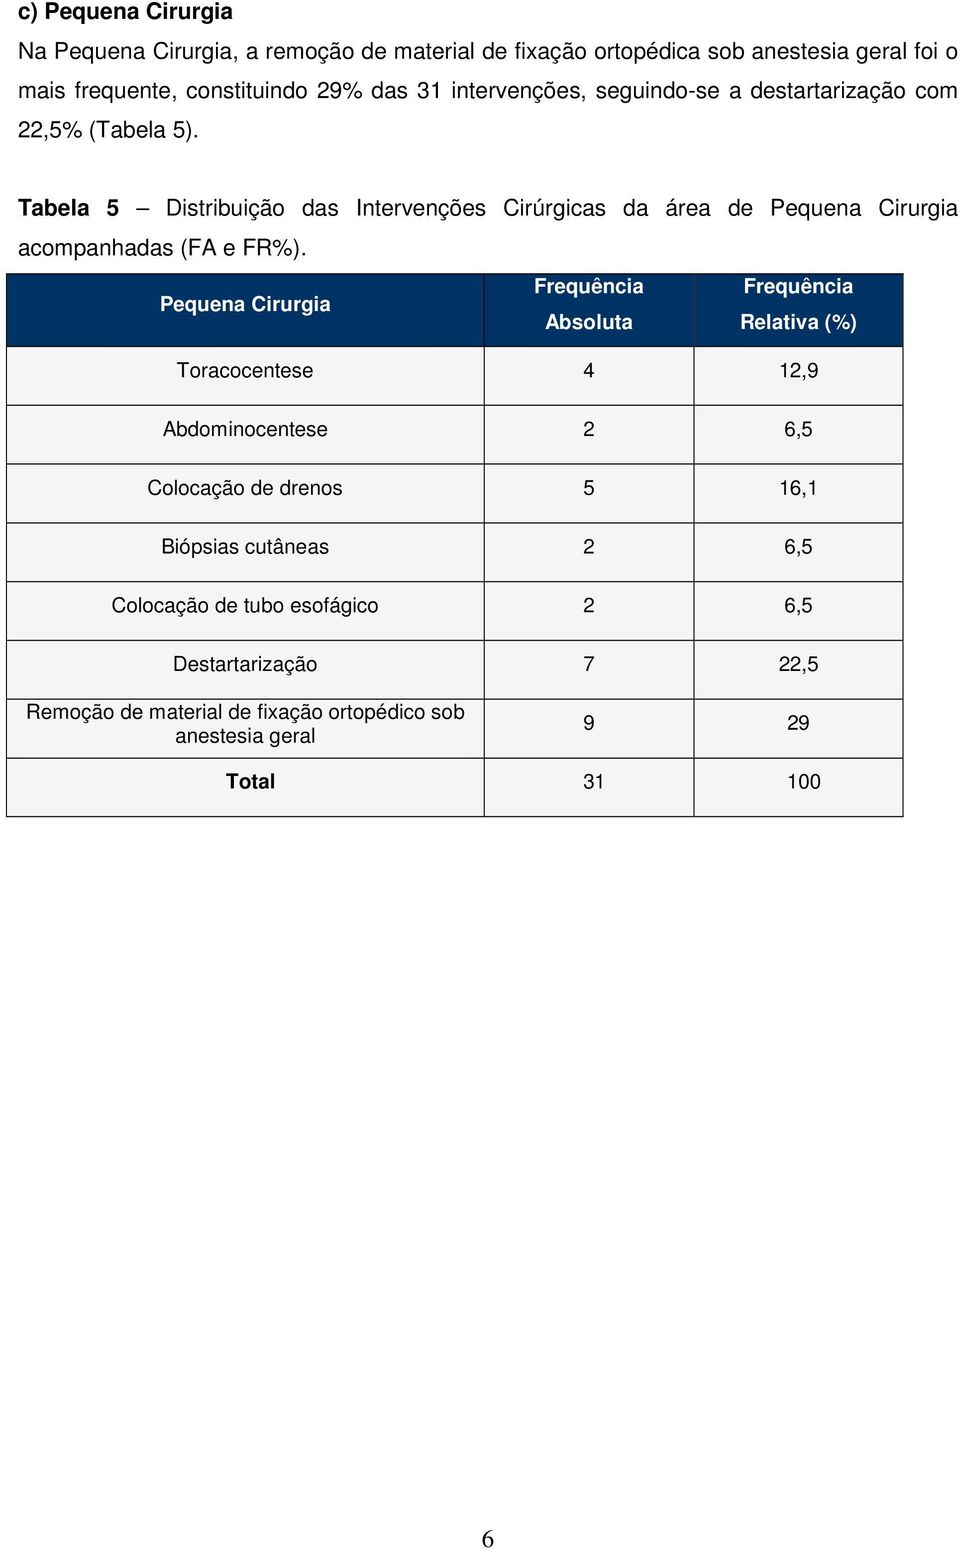 Tabela 5 Distribuição das Intervenções Cirúrgicas da área de Pequena Cirurgia acompanhadas (FA e FR%).